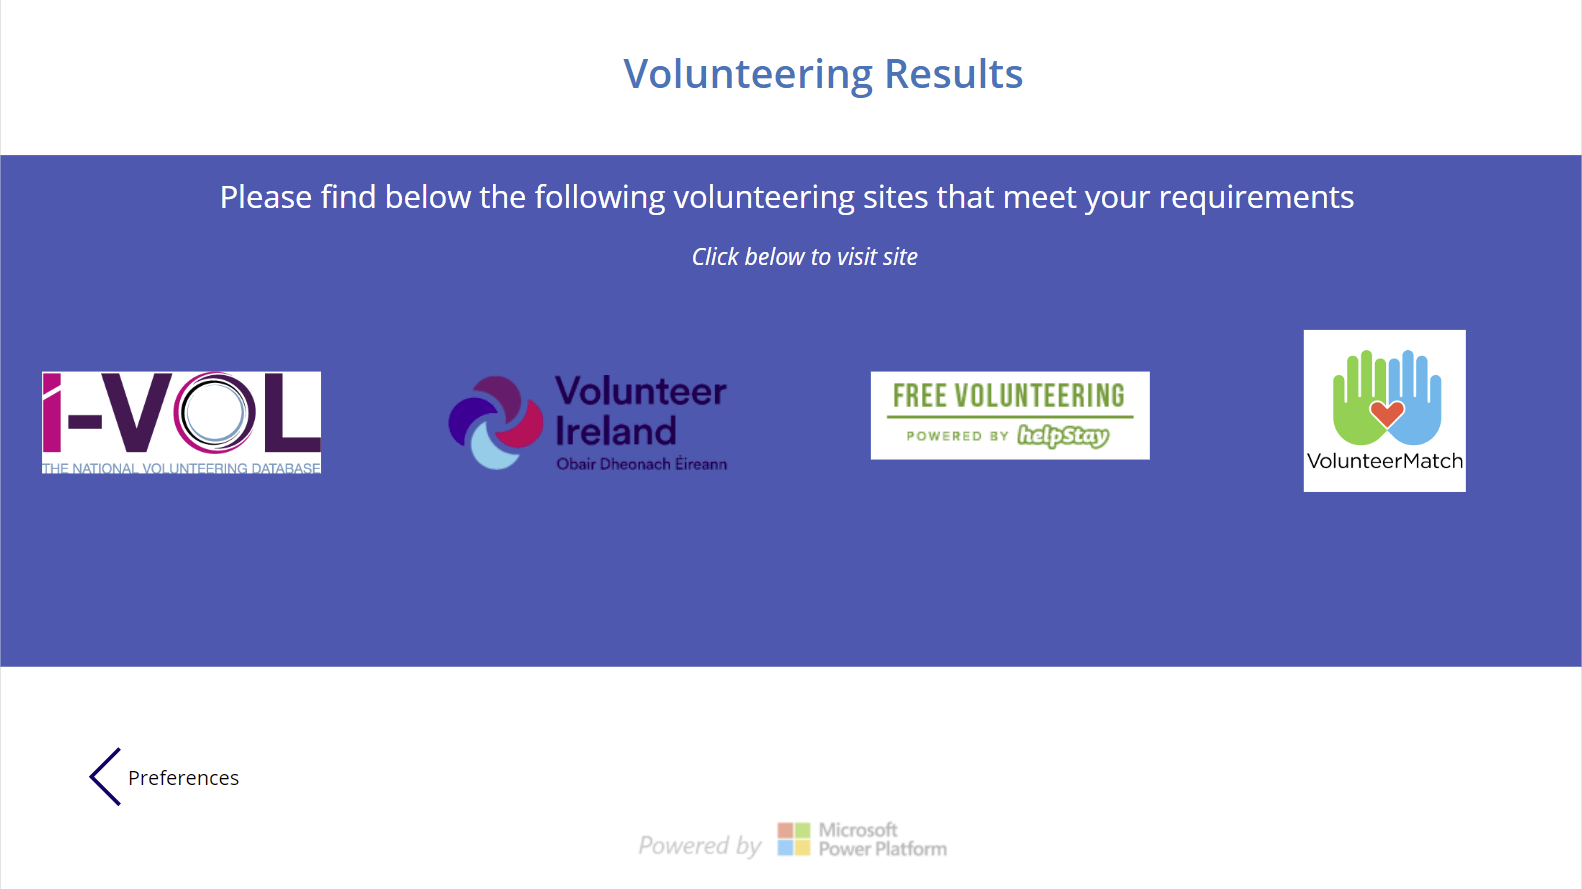 Choose a volunteering site